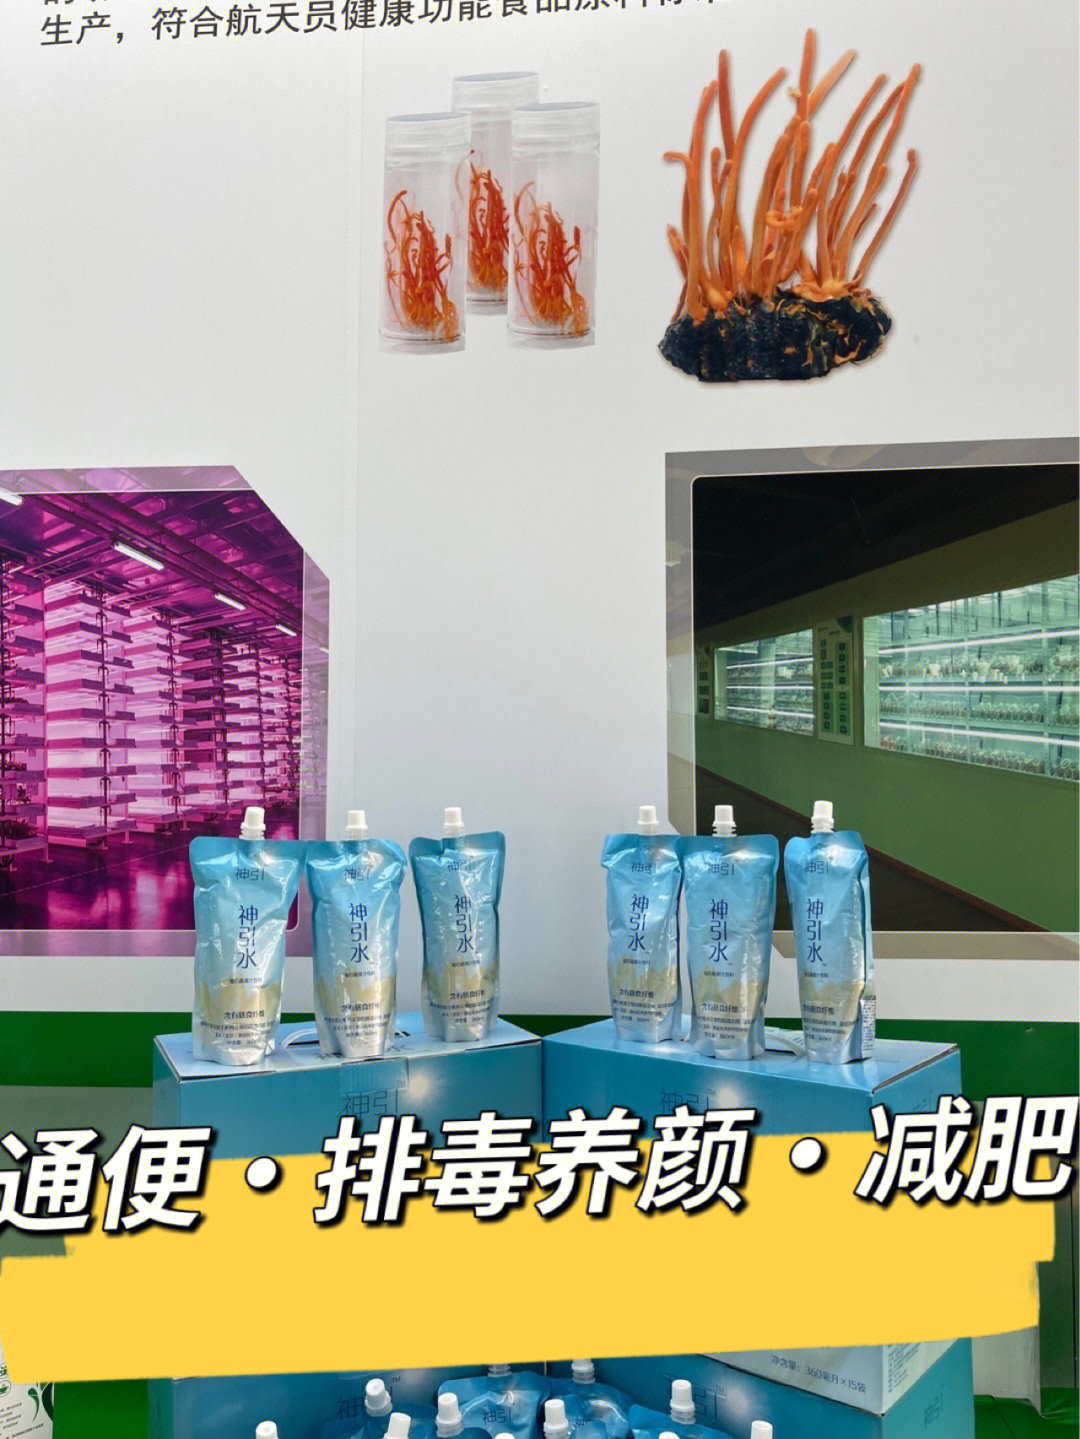 菊苣纤维大健康产业图片